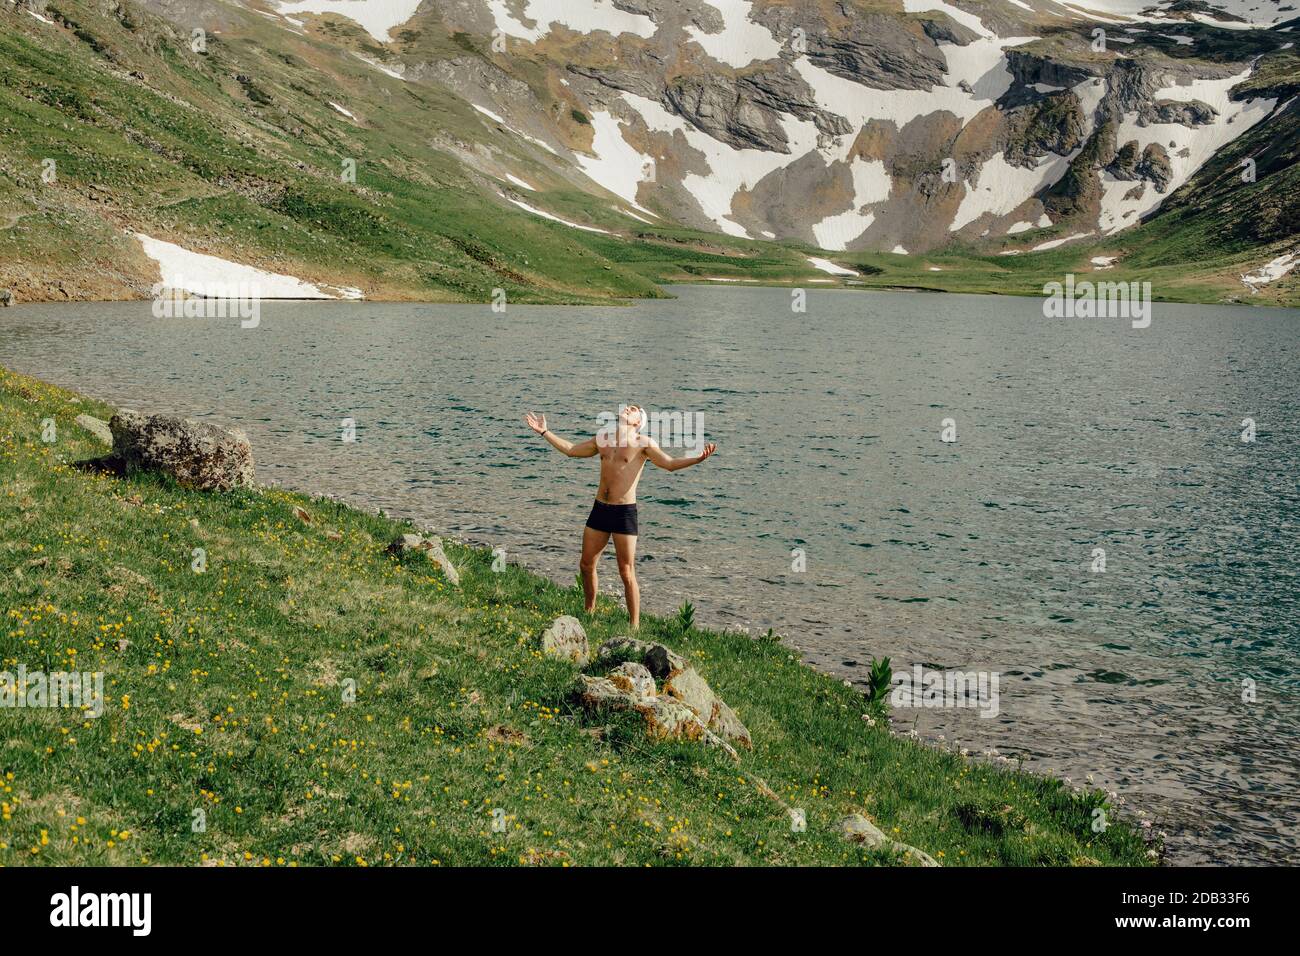 Felice giovane turista maschile in un costume da bagno è felice che ha raggiunto il suo obiettivo e ha raggiunto la montagna lago godendo della splendida natura su Foto Stock